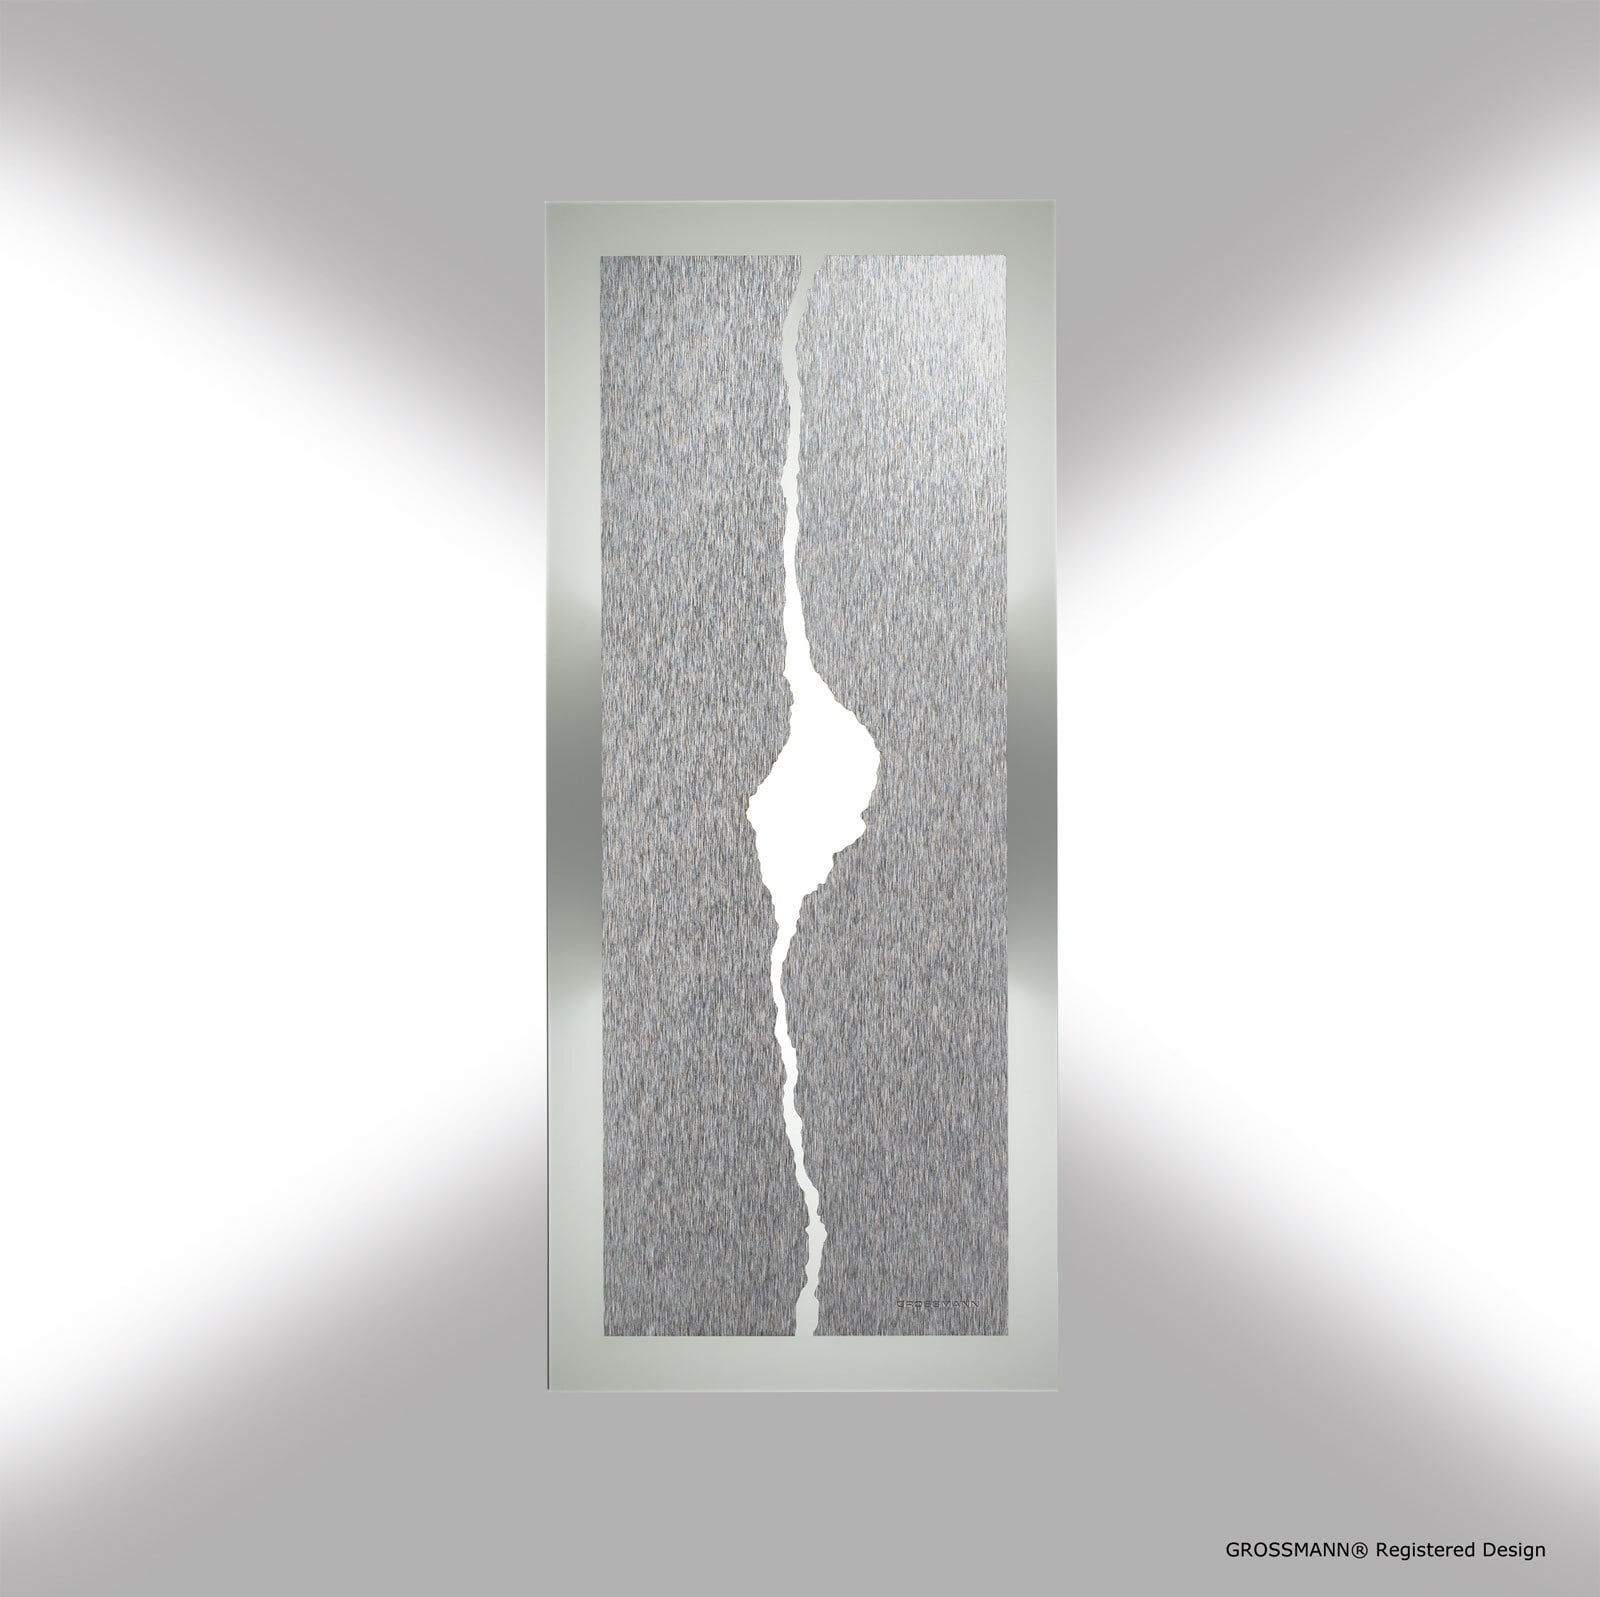 GROSSMANN LED Wand-/Deckenlampe CANYON 42 x 18 cm alufarbig